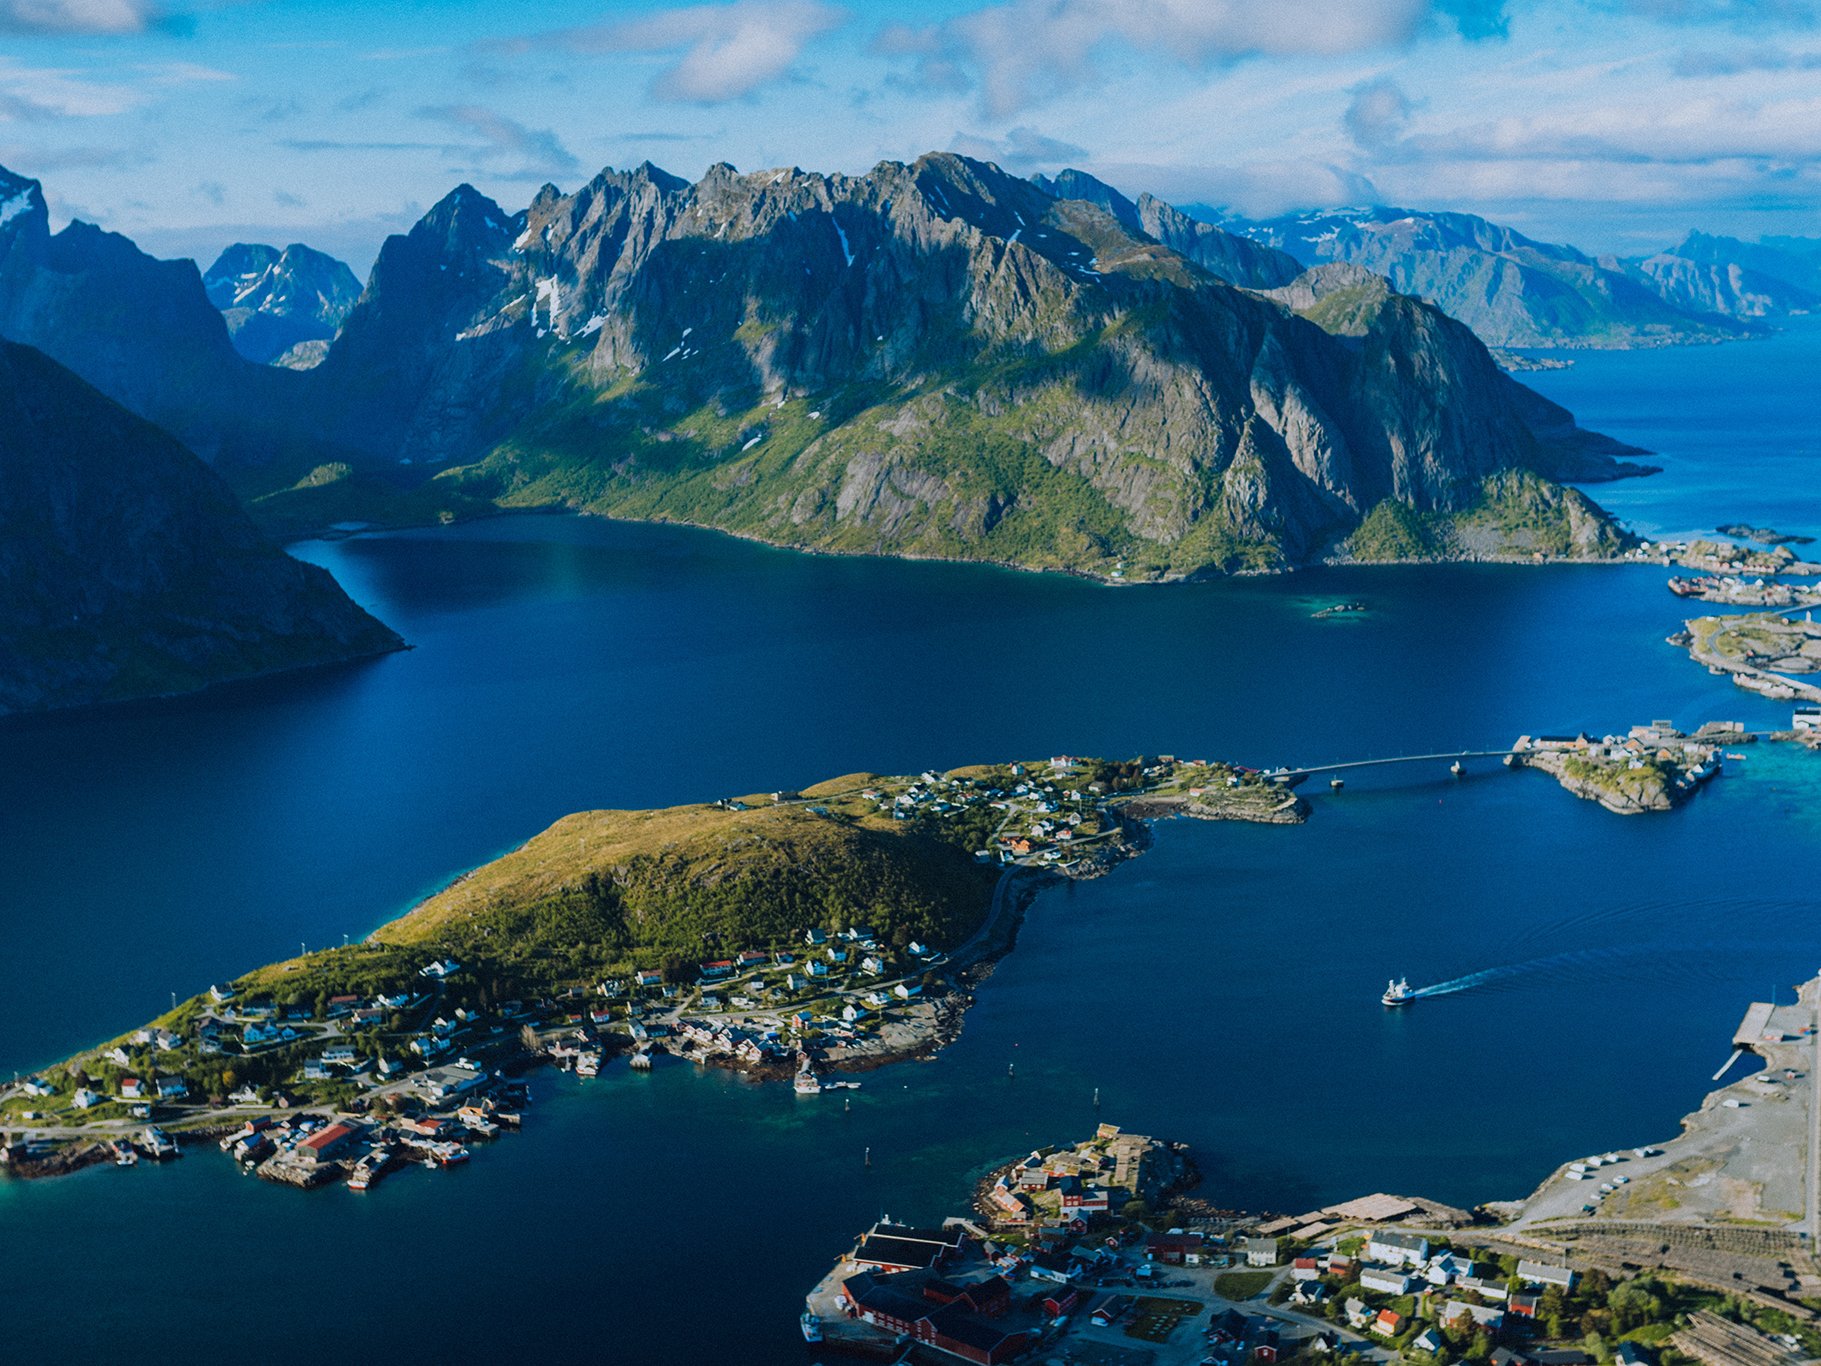 Norway's Lofoten islands